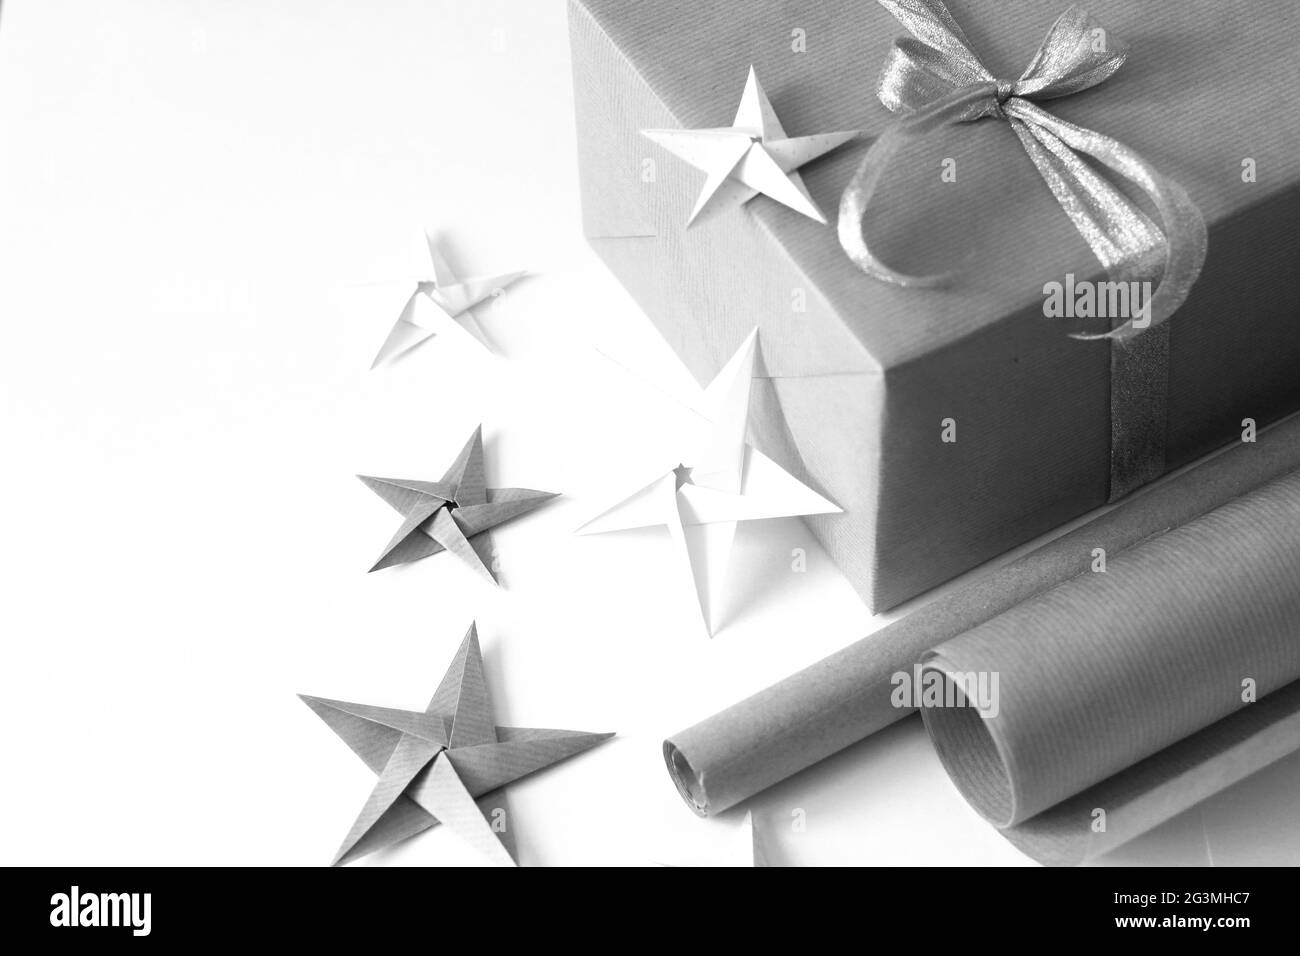 Emballage des cadeaux de Noël. Plat minimal de boîte cadeau, rouleaux de papier Kraft, étoiles Origami sur fond blanc. Concept de fête des fêtes. Banque D'Images